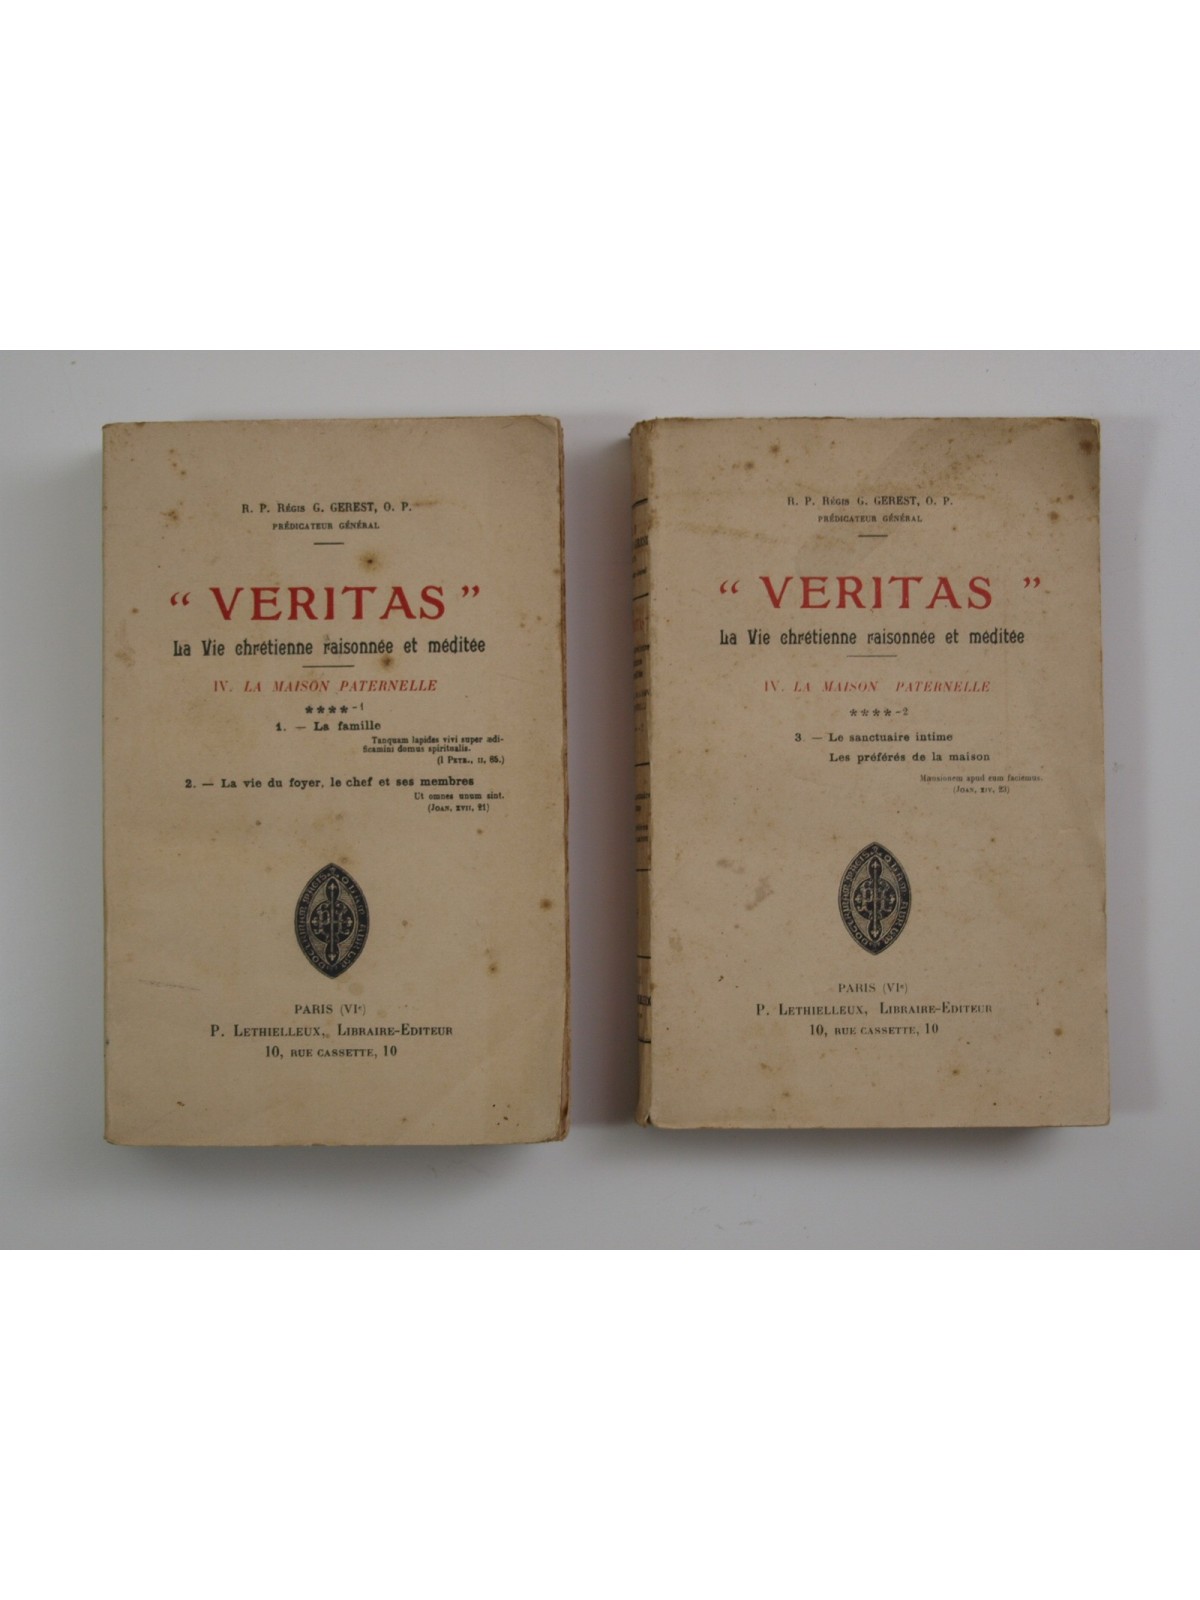 Gerest R. P. Regis : "Veritas". La vie chrétienne. La maison paternelle. 2 vol.